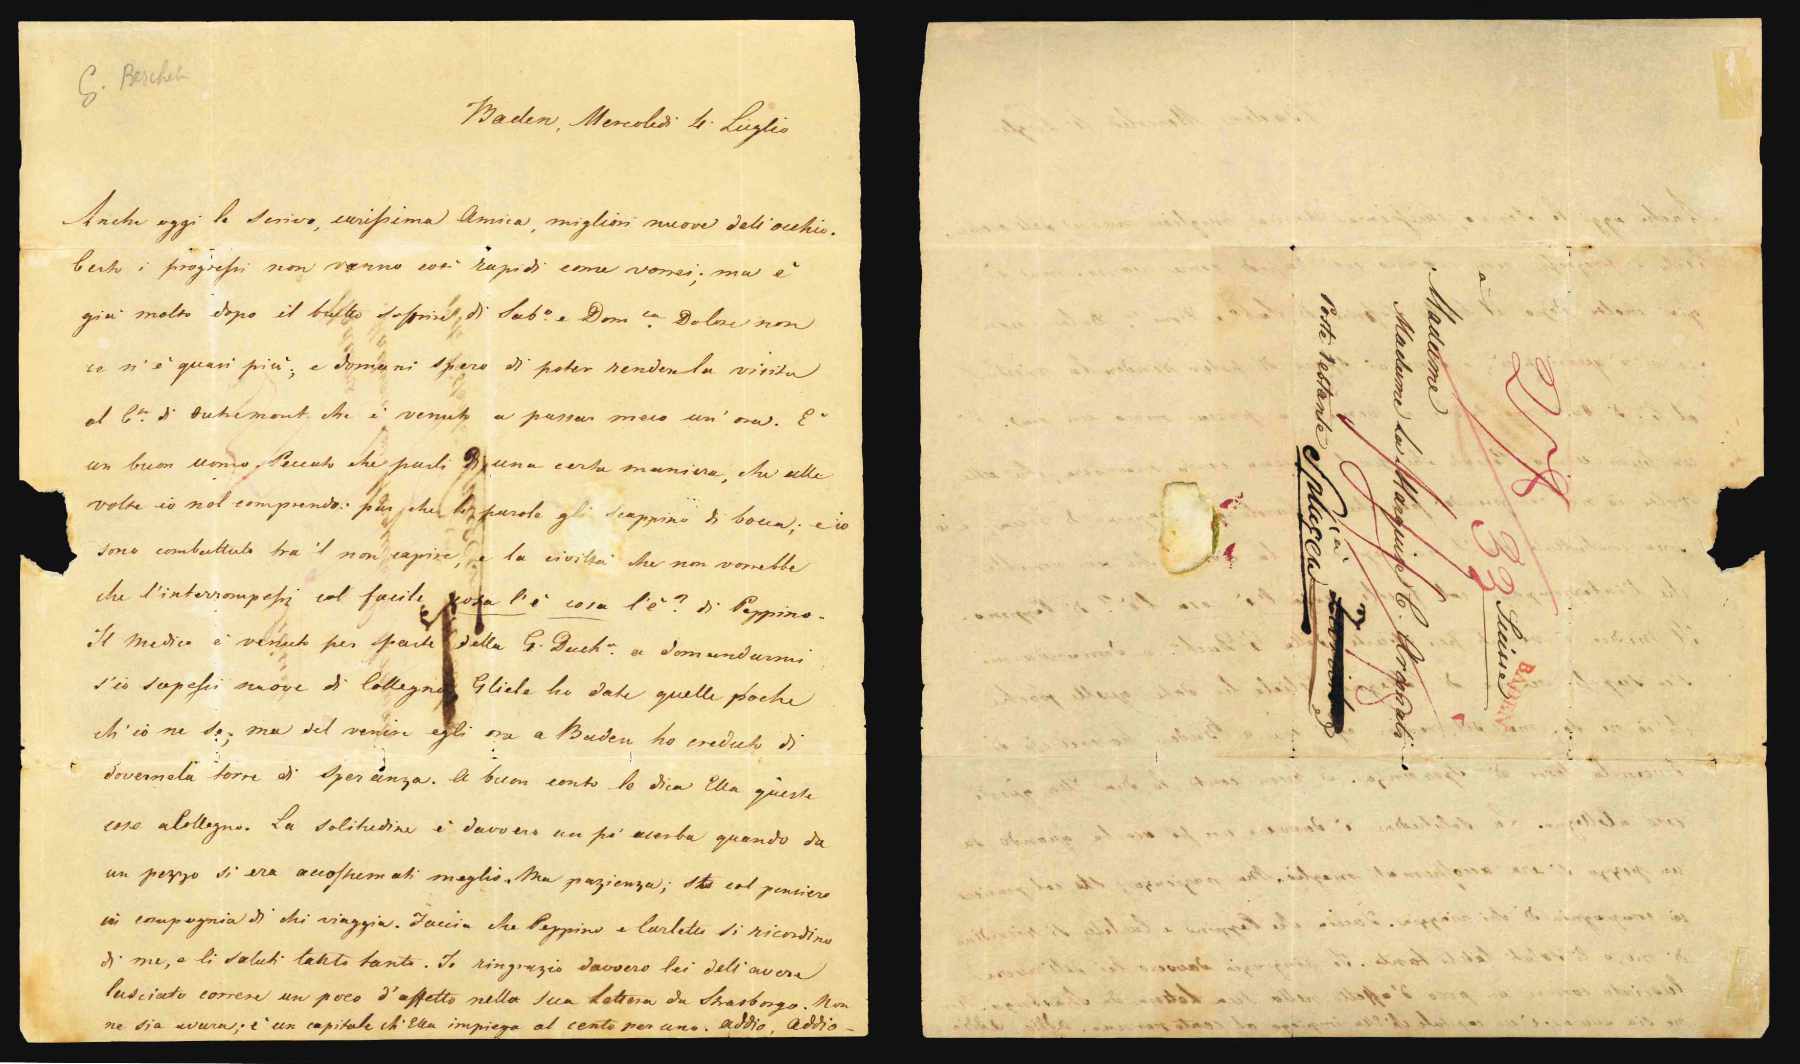 lettera autografa non firmata, datata 4 luglio [anni 1830?] - baden, inviata alla marchesa arconati